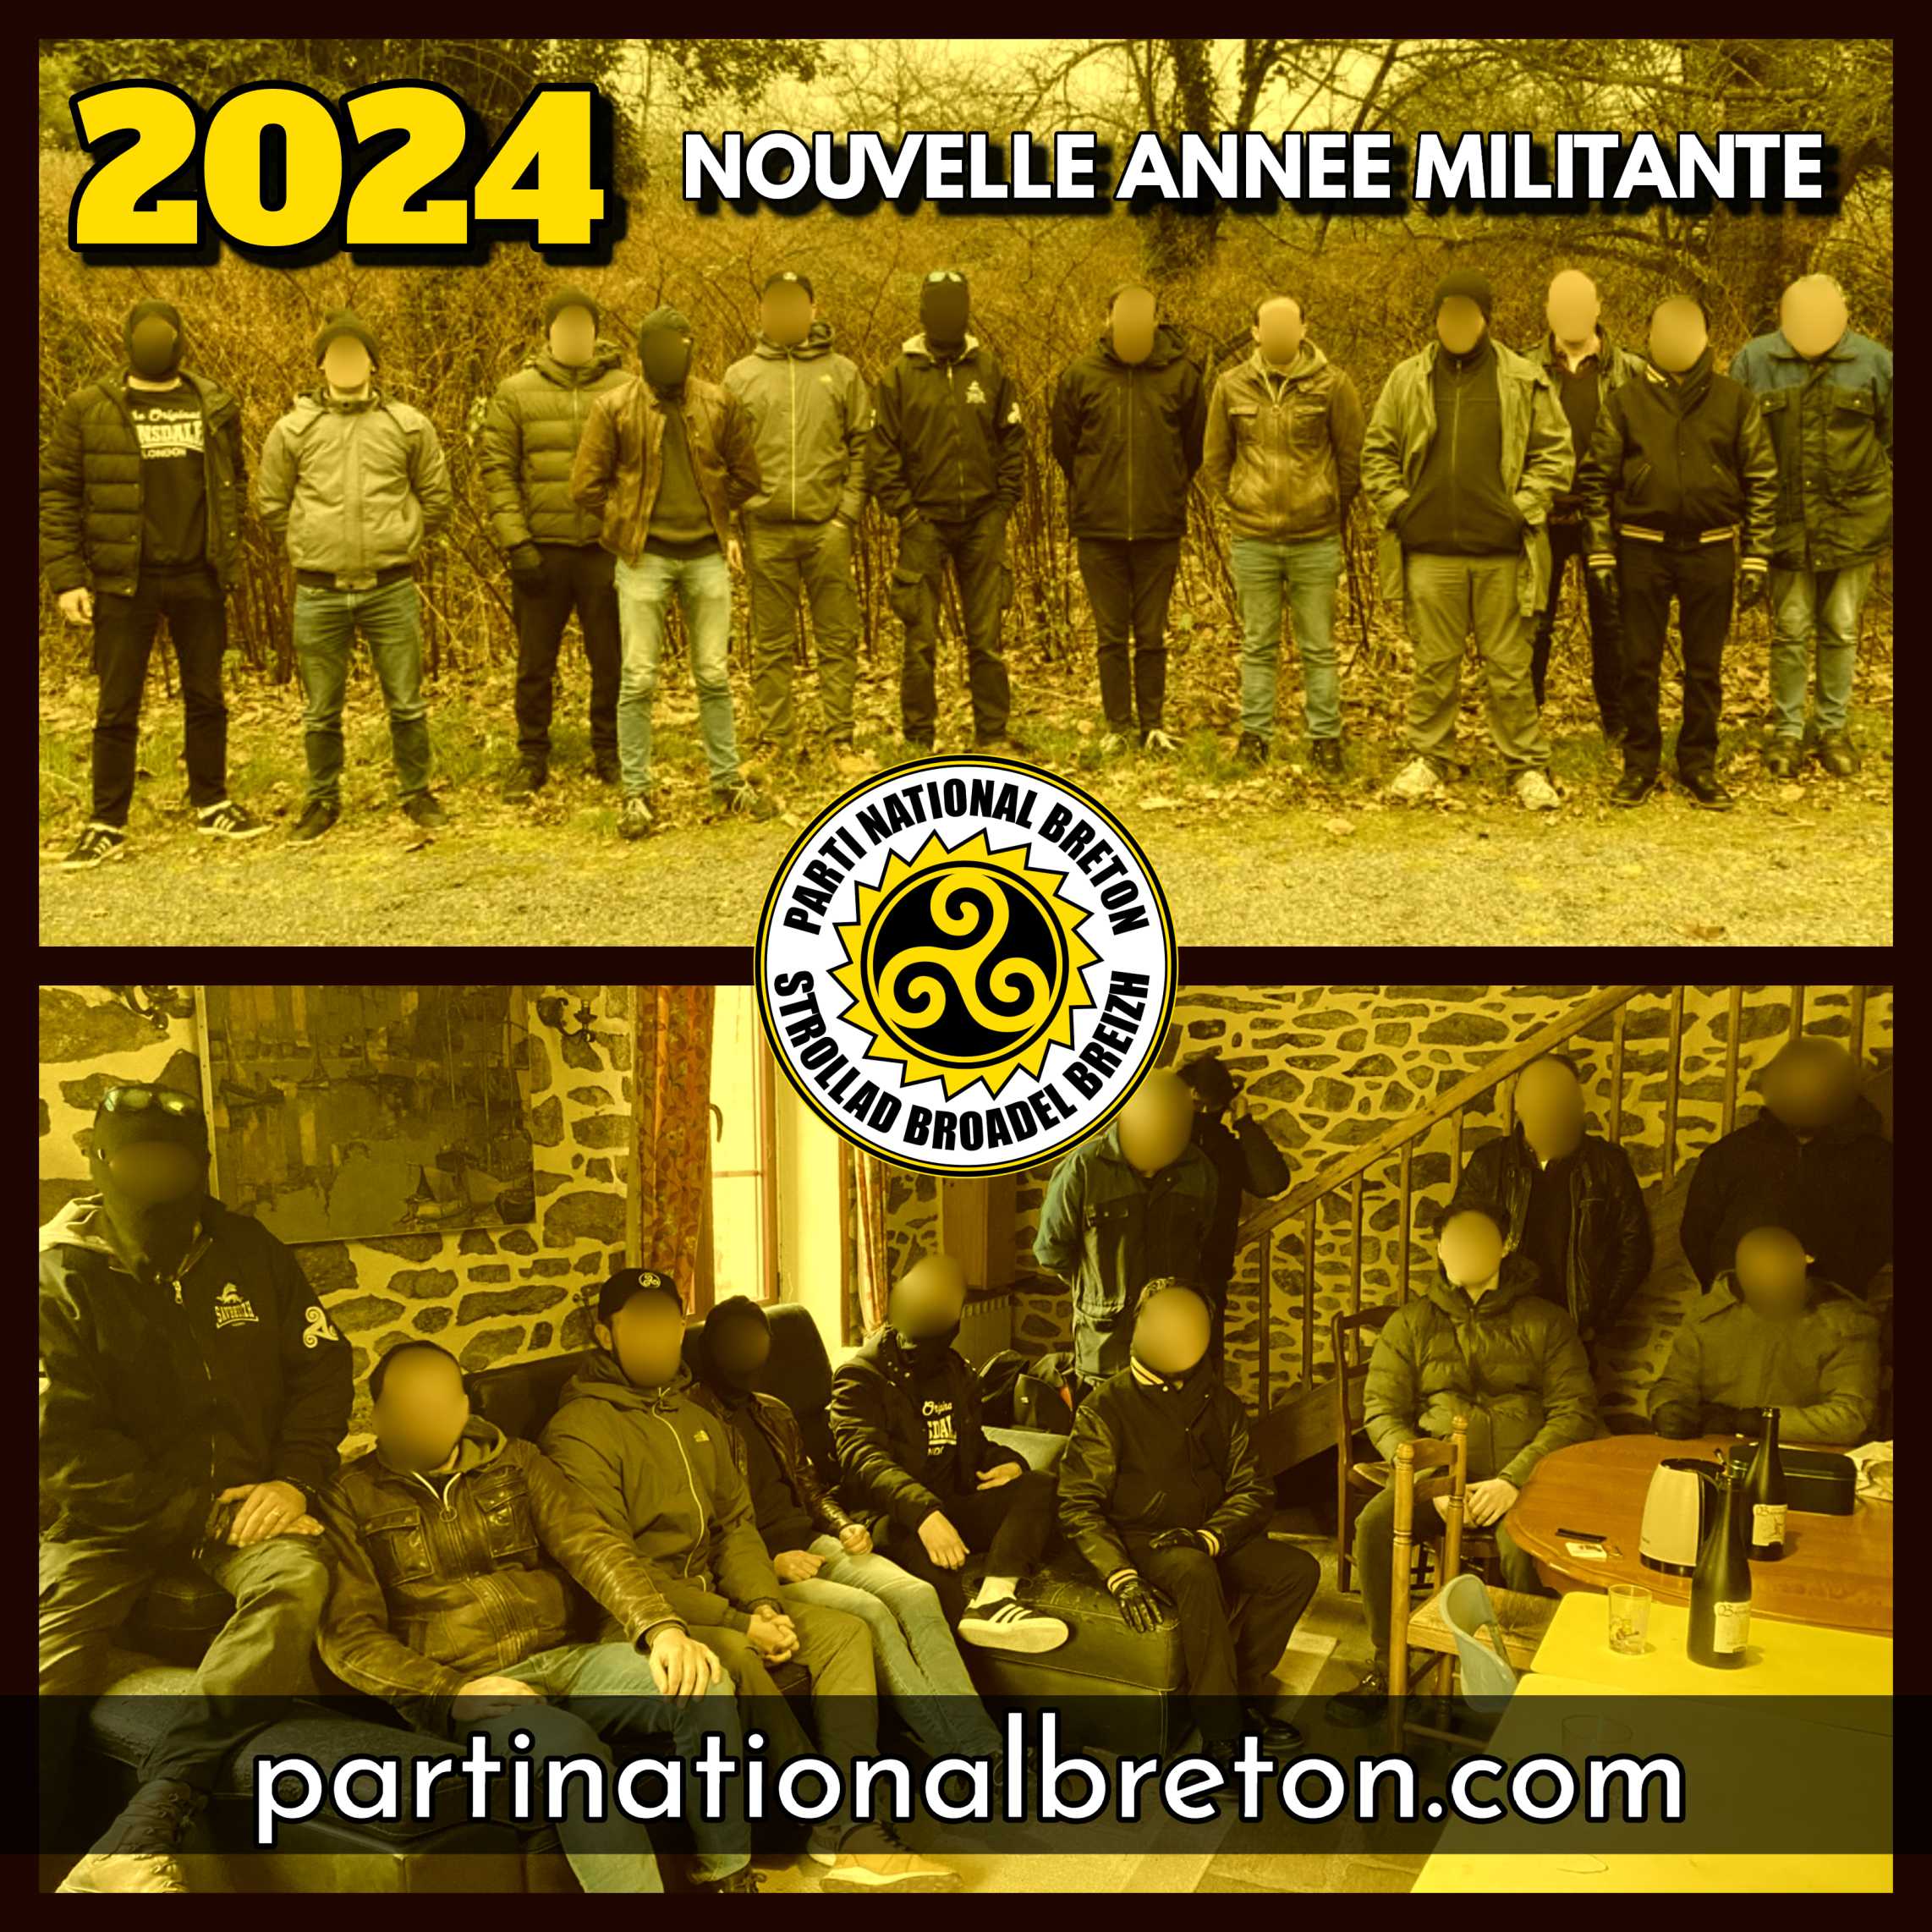 Rencontre militante de nouvelle année 2024 !